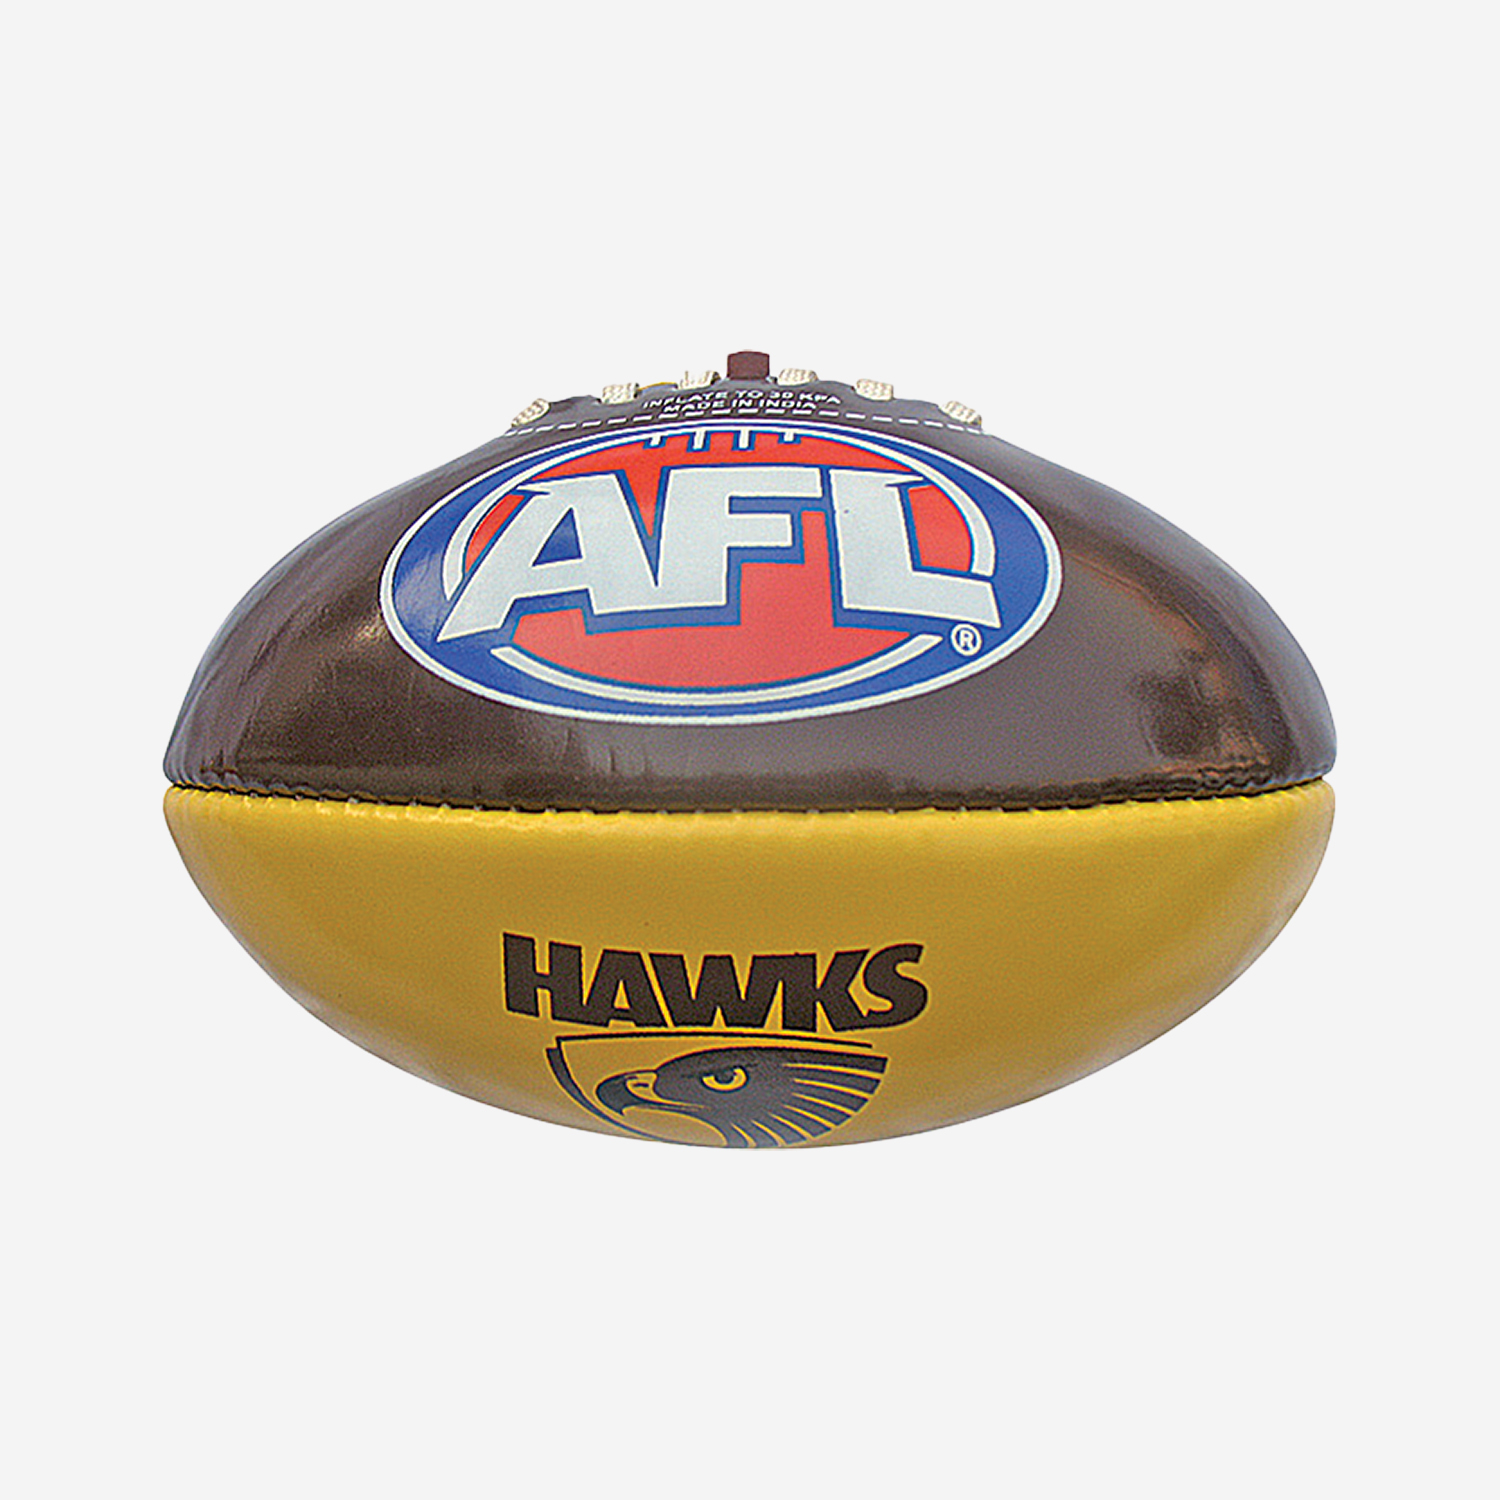 HAWTHORN HAWKS AFL PVC CLUB FOOTBALL 16CM